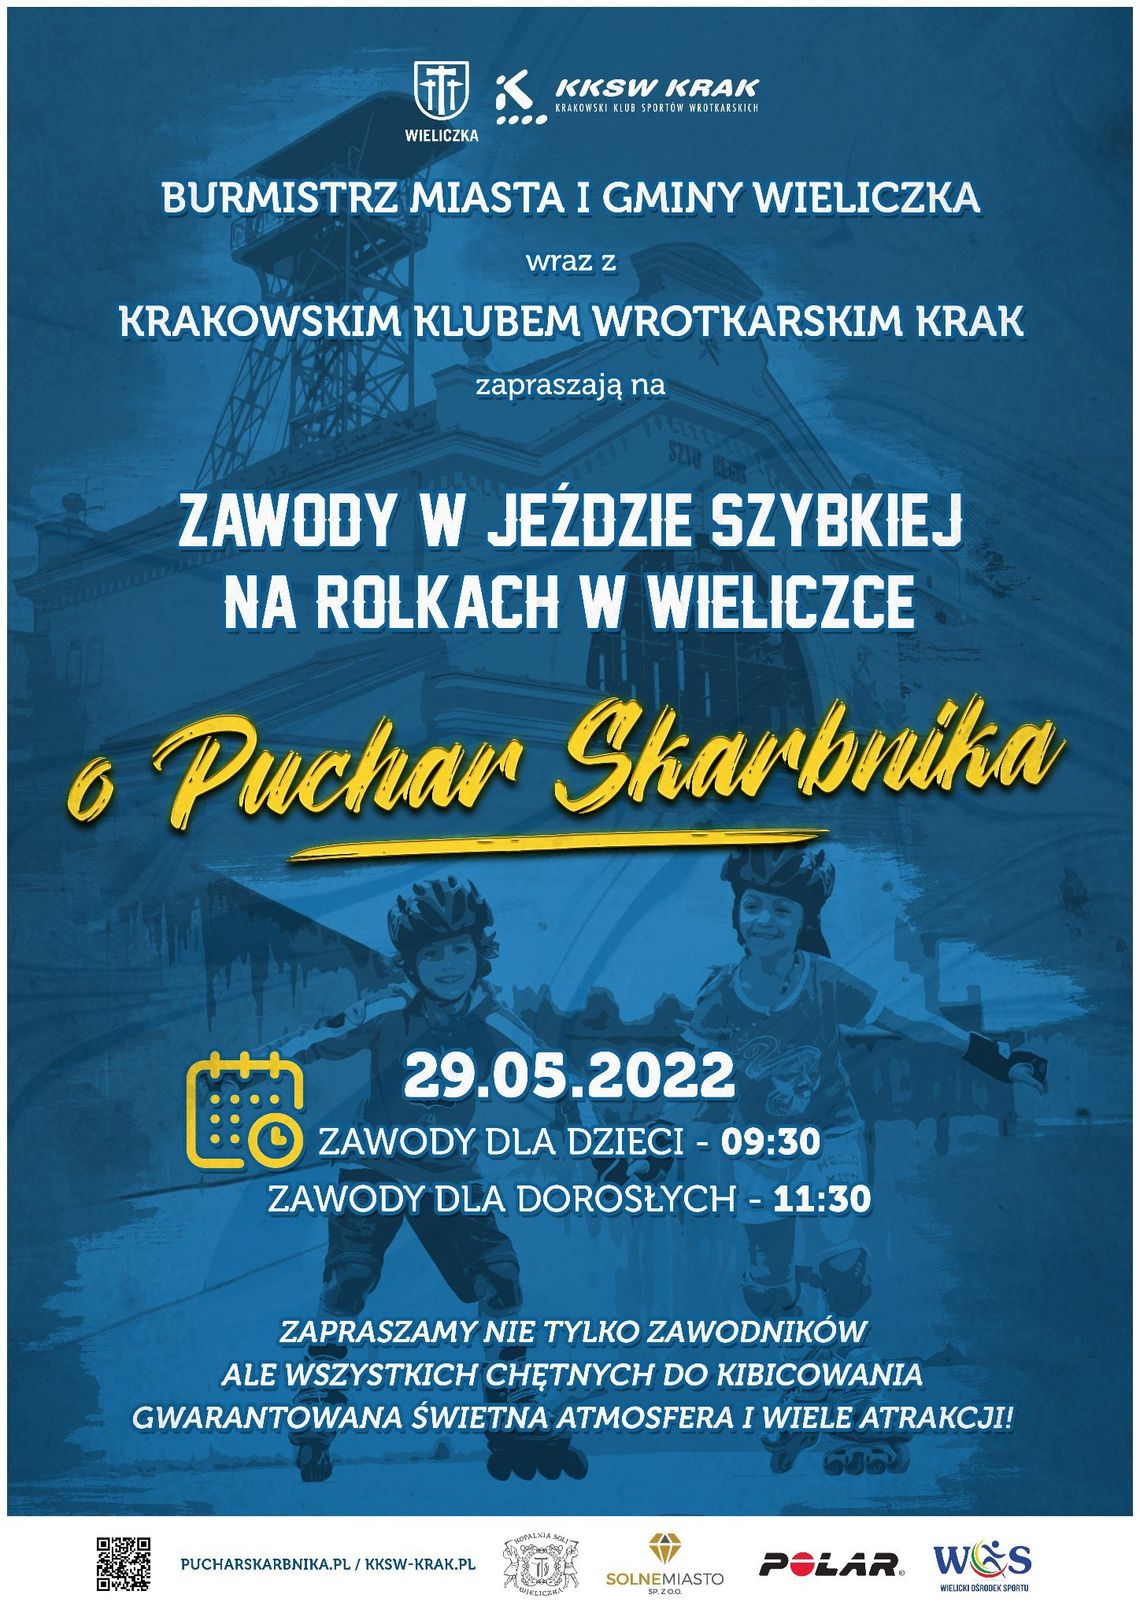 Zawody o Puchar Skarbnika – Wieliczka 2022! Zapraszamy